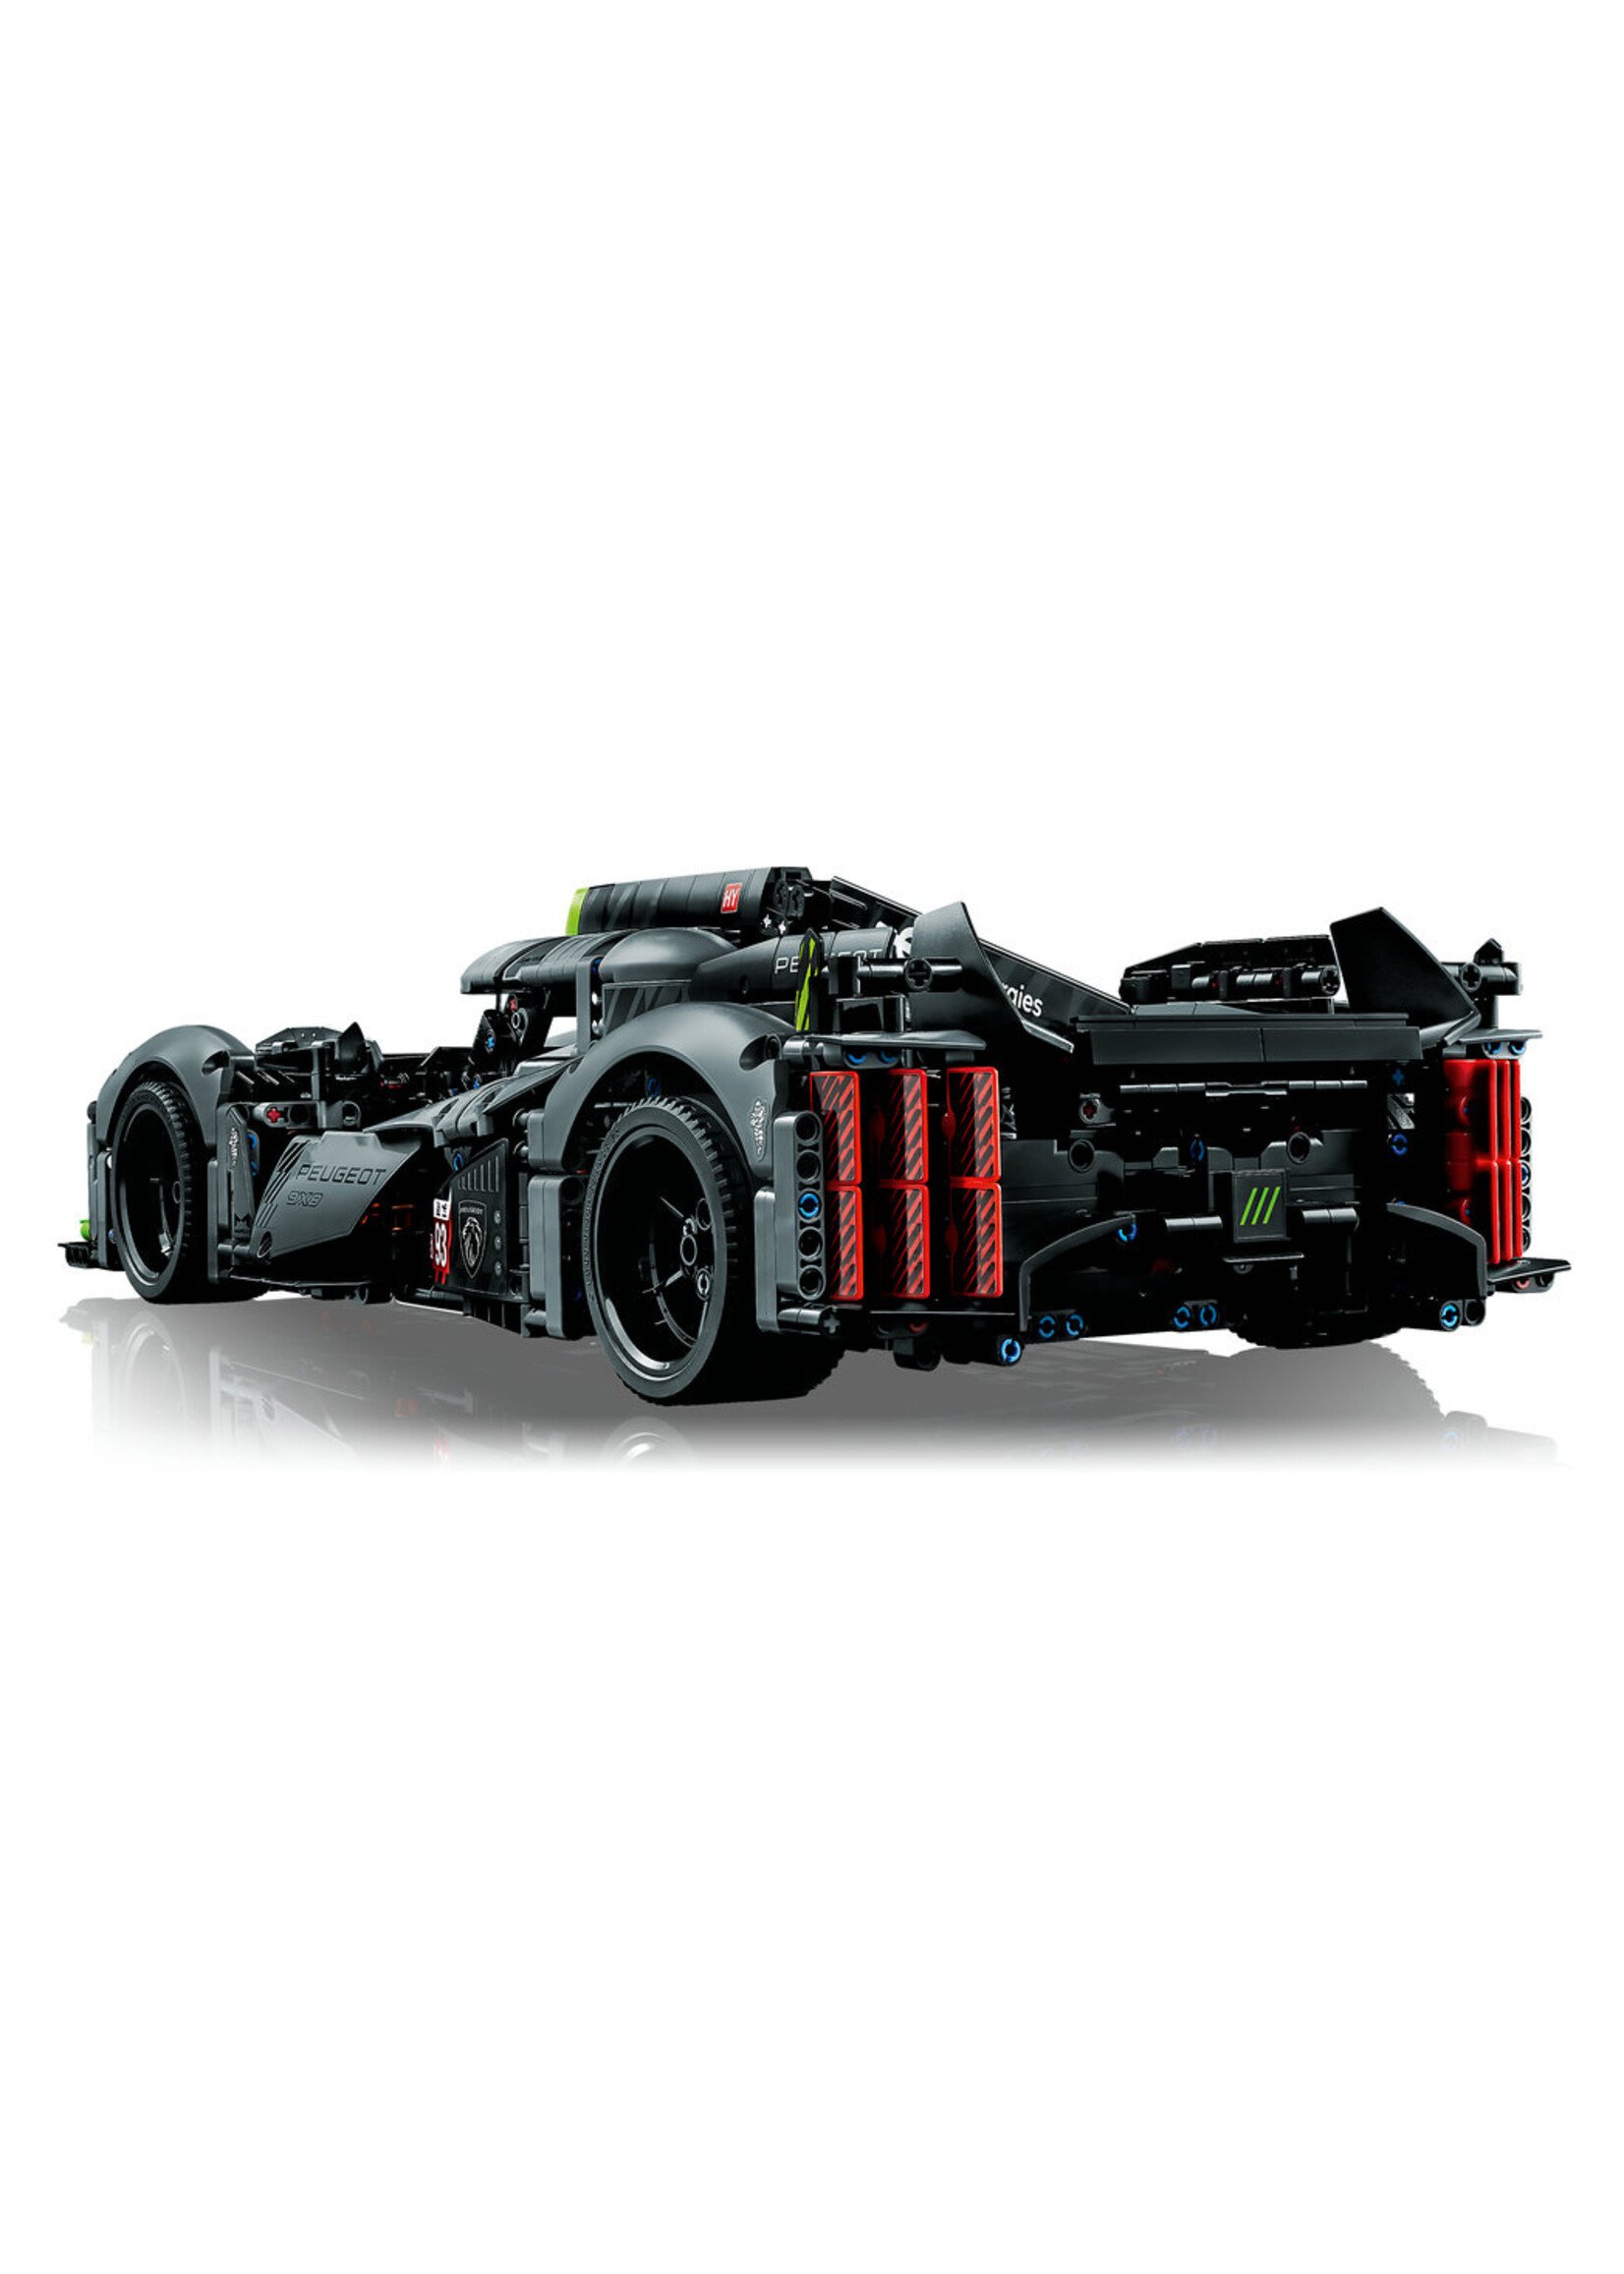 LEGO 42156 - Peugeot 9x8 24 Hour LeMans